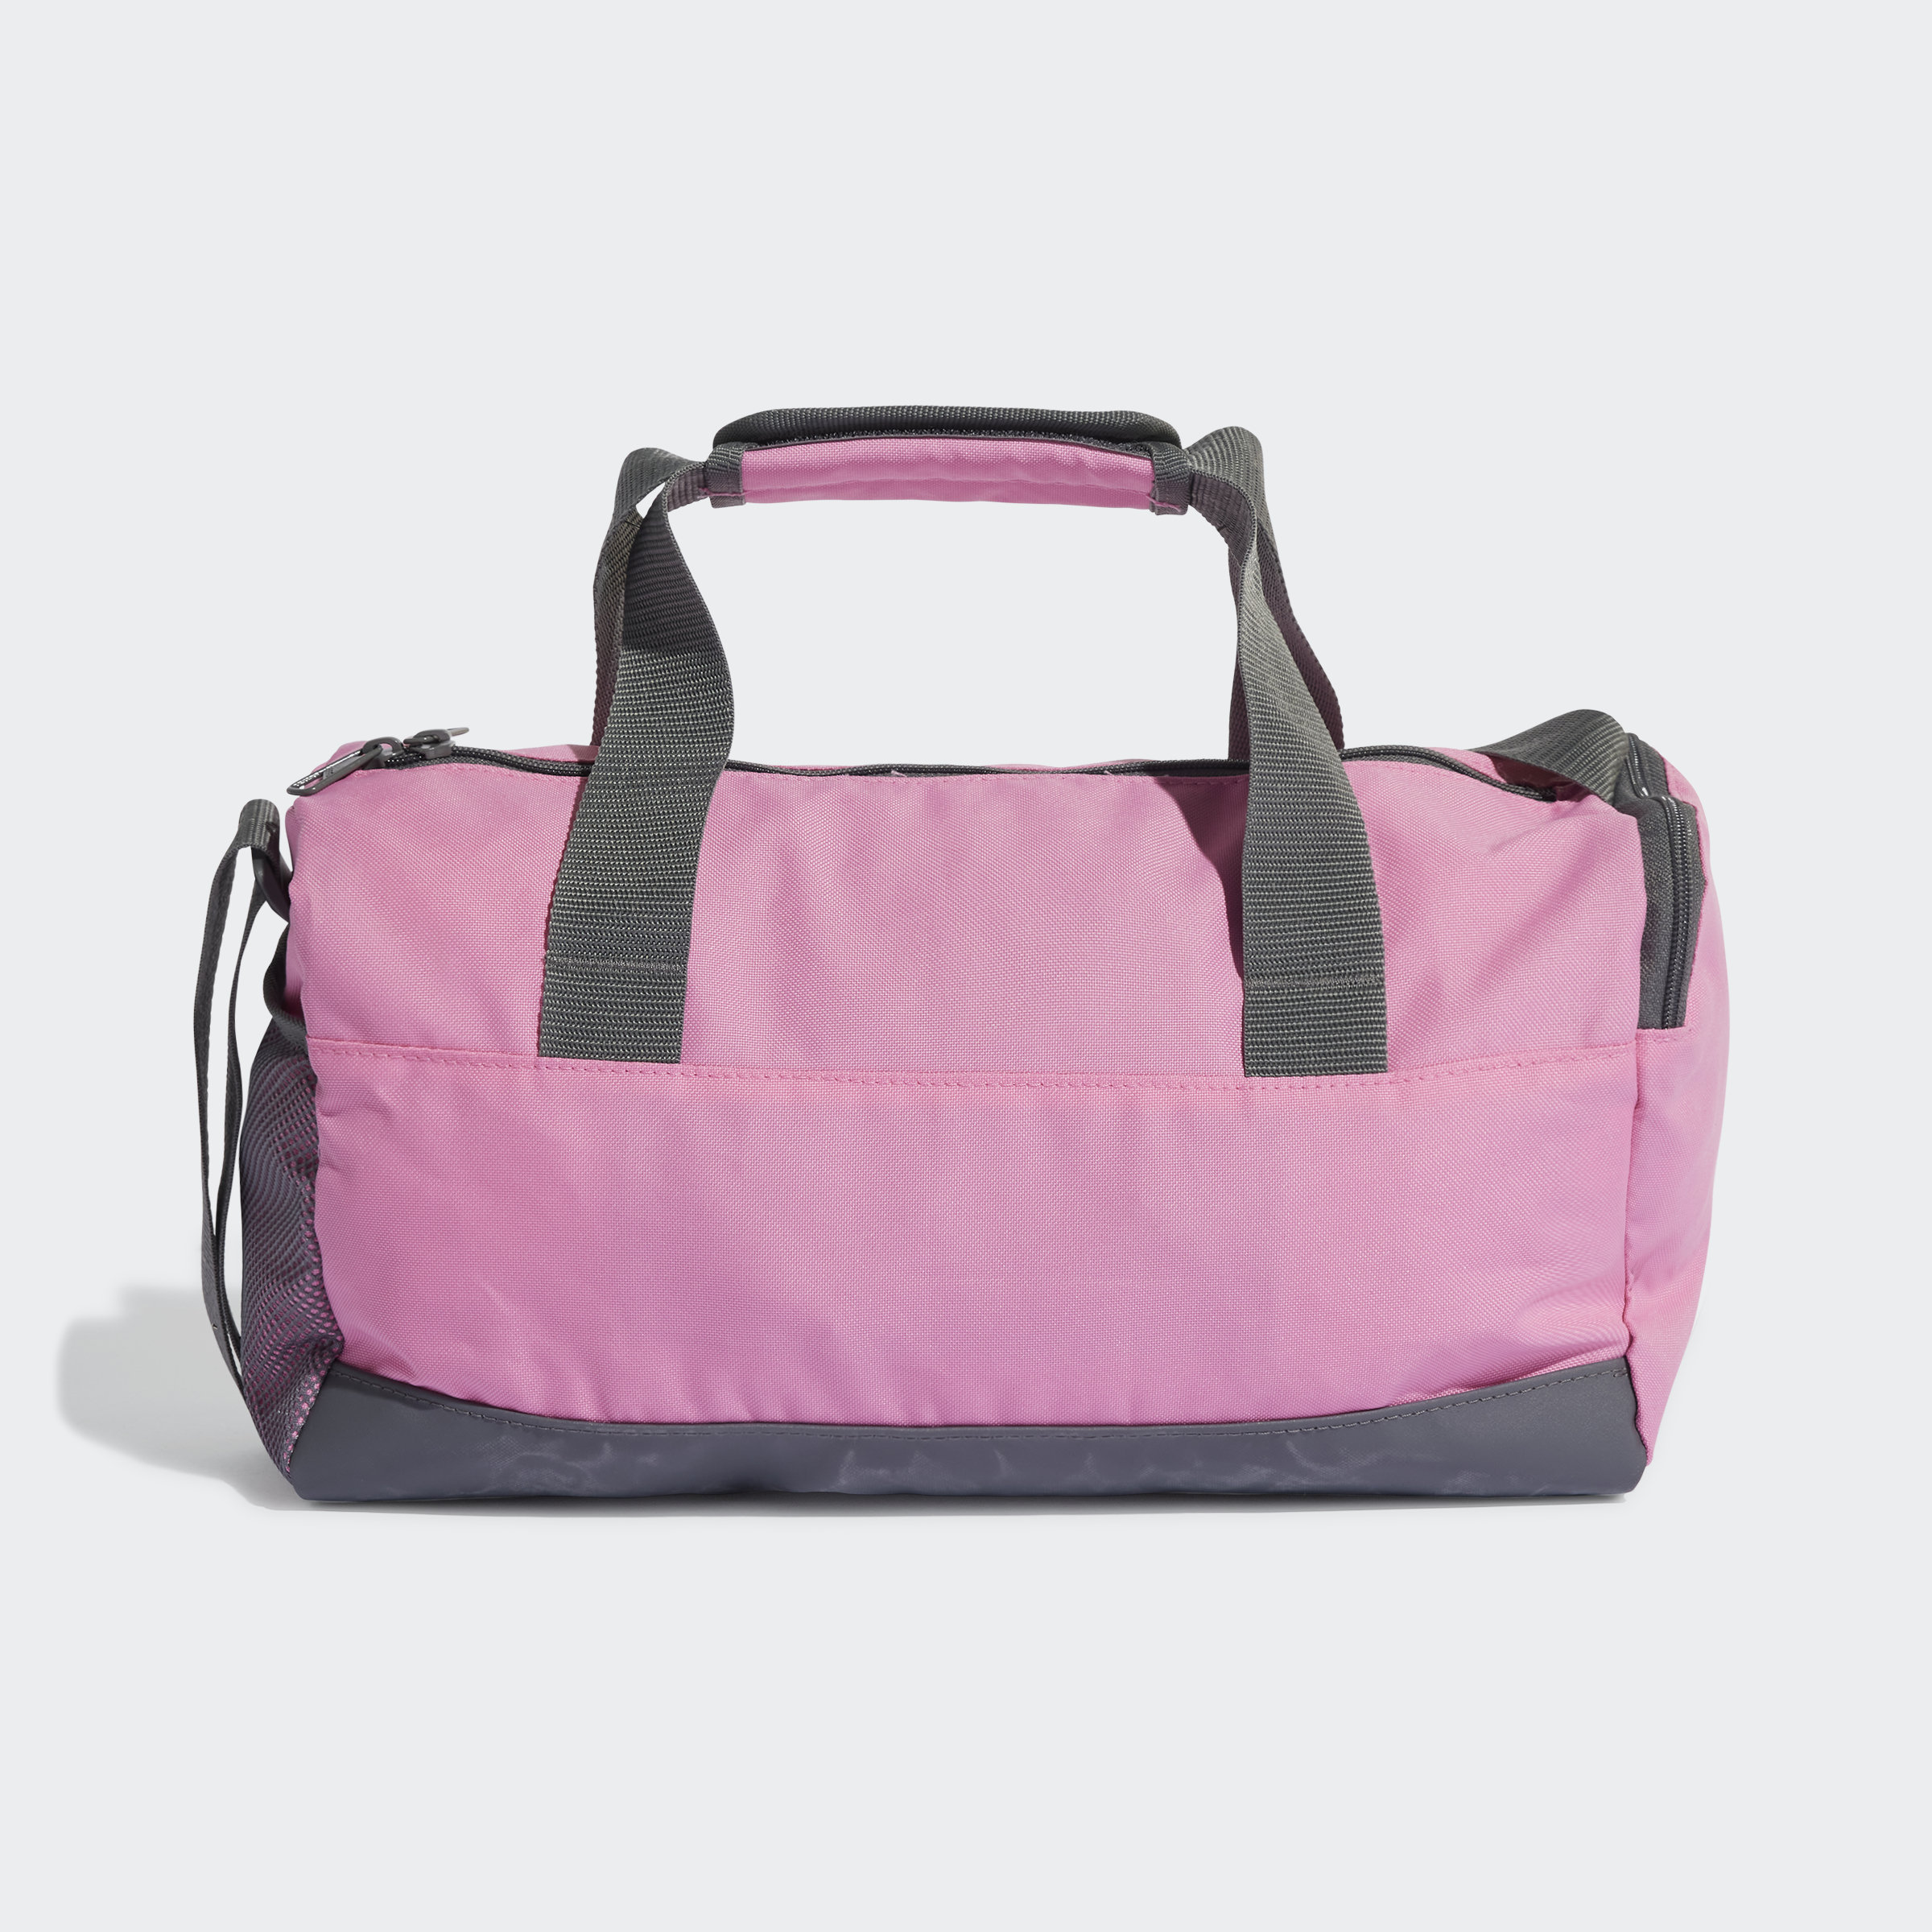 Rains 14220 unisex waterproof weekend duffel bag small in candy pink | ASOS